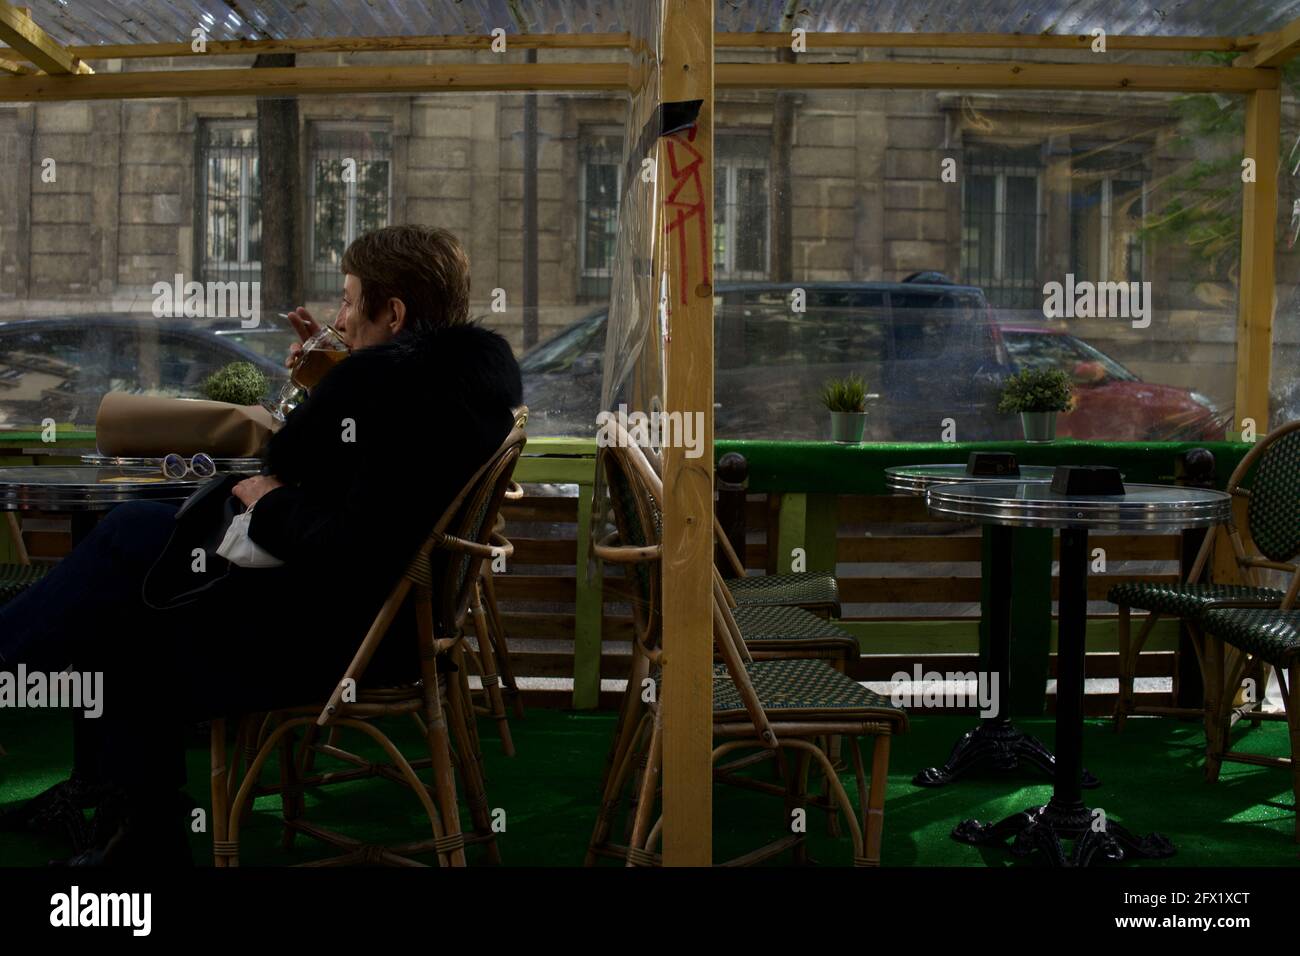 Una mujer parisina se sienta sola, disfrutando de una bebida en la terraza temporal de un café en París después de que las restricciones de Covid-19 fueron levantadas en 2021 - Le Montmartre Café, Rue Custine, 75018, París, Francia Foto de stock